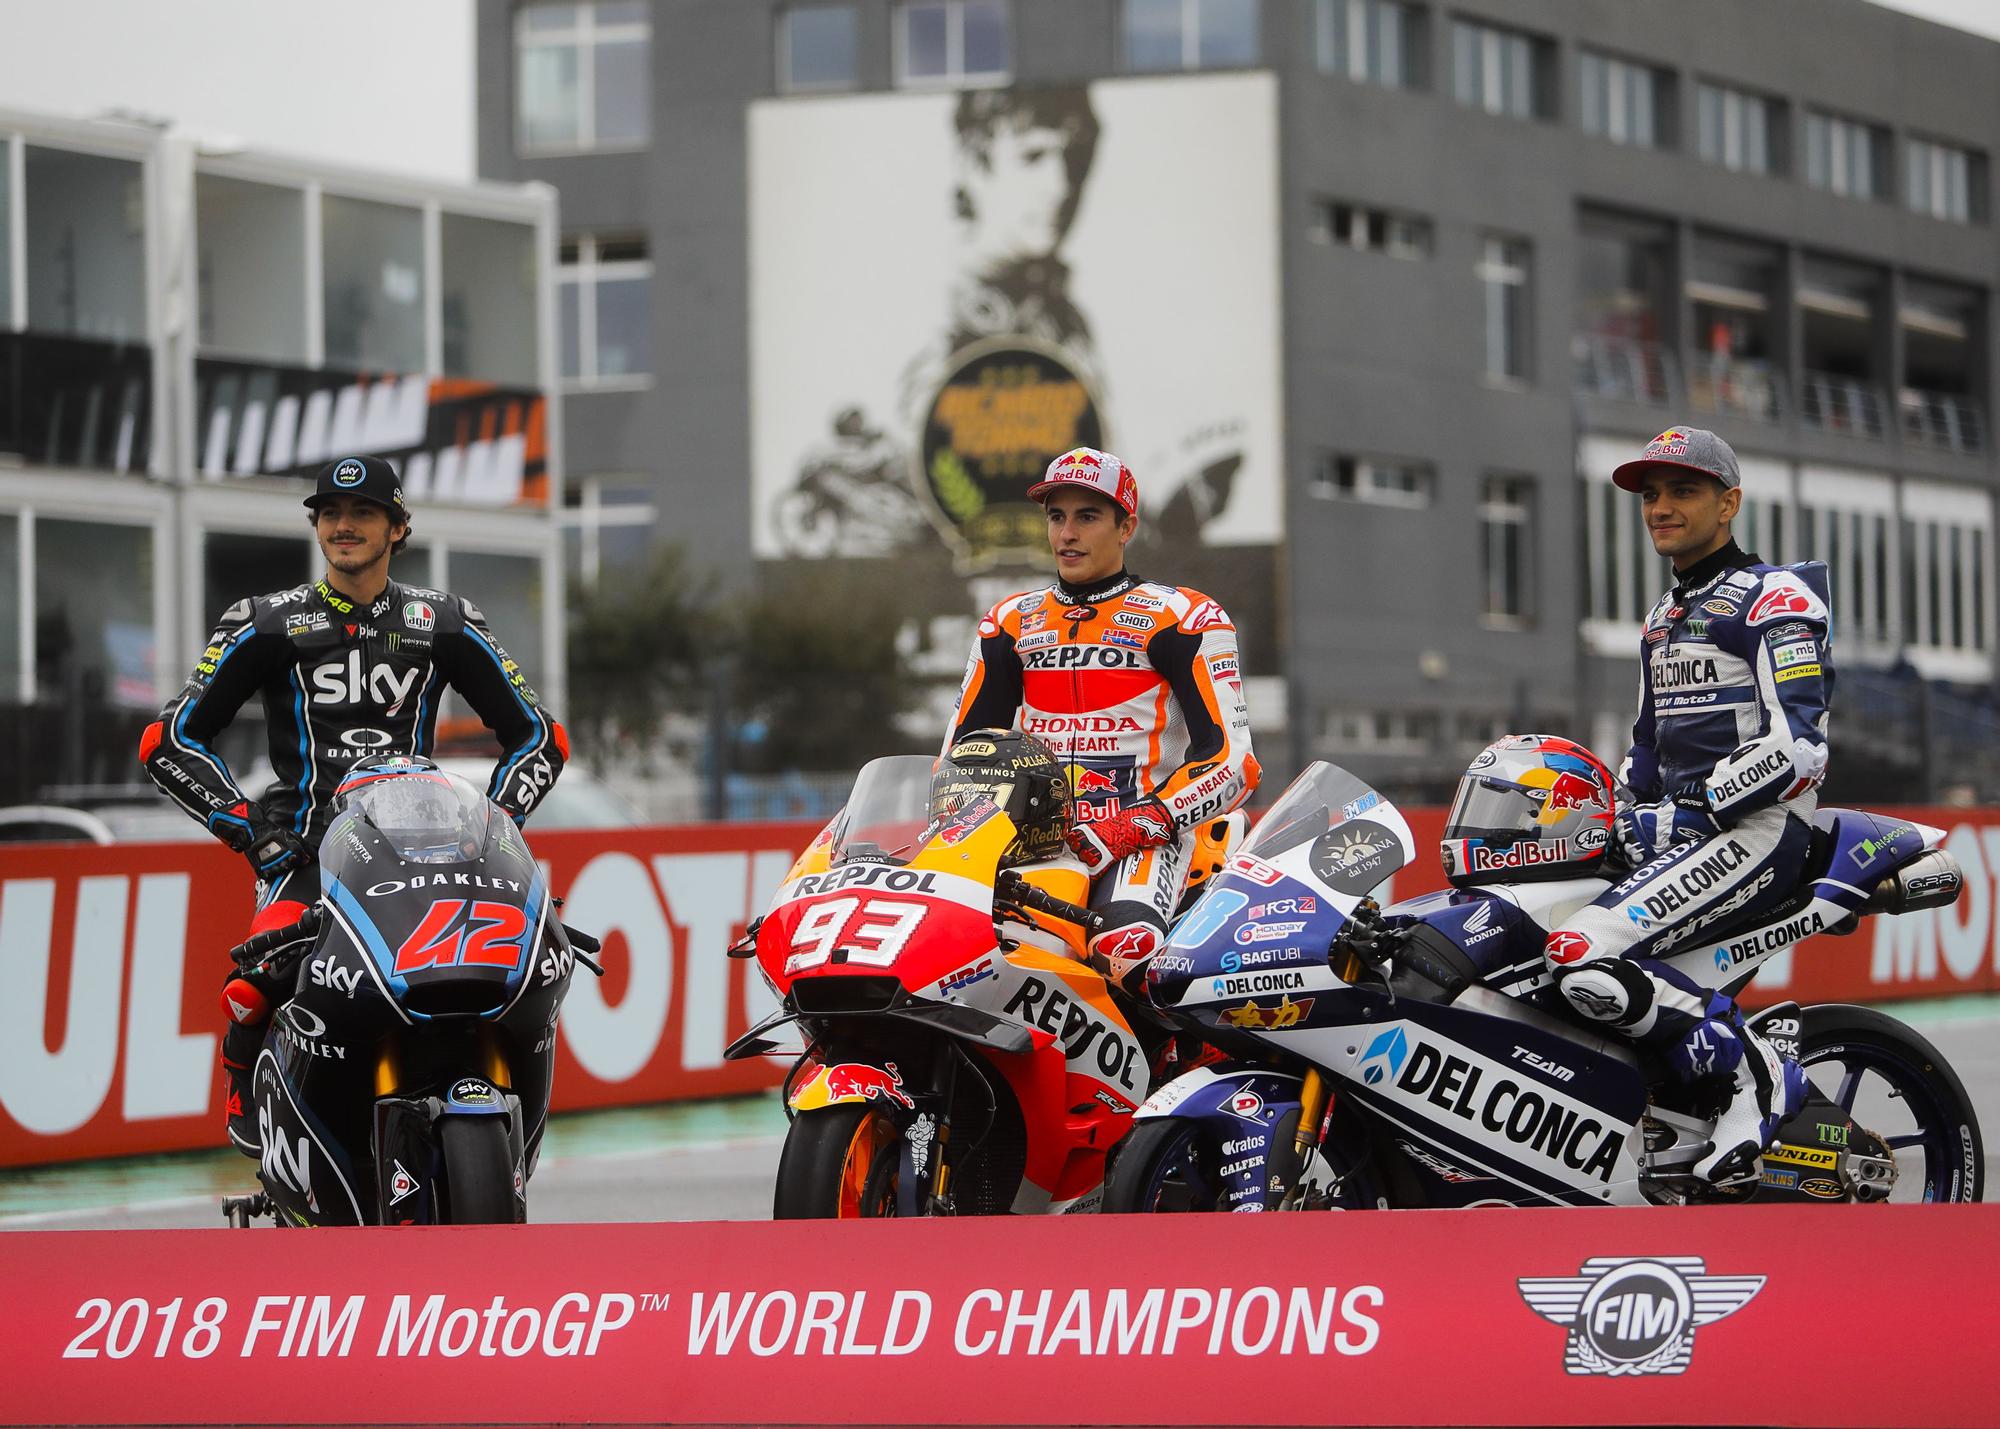 Campeones del mundo en el Gran Premio de la Comunitat Valenciana a lo largo de su historia